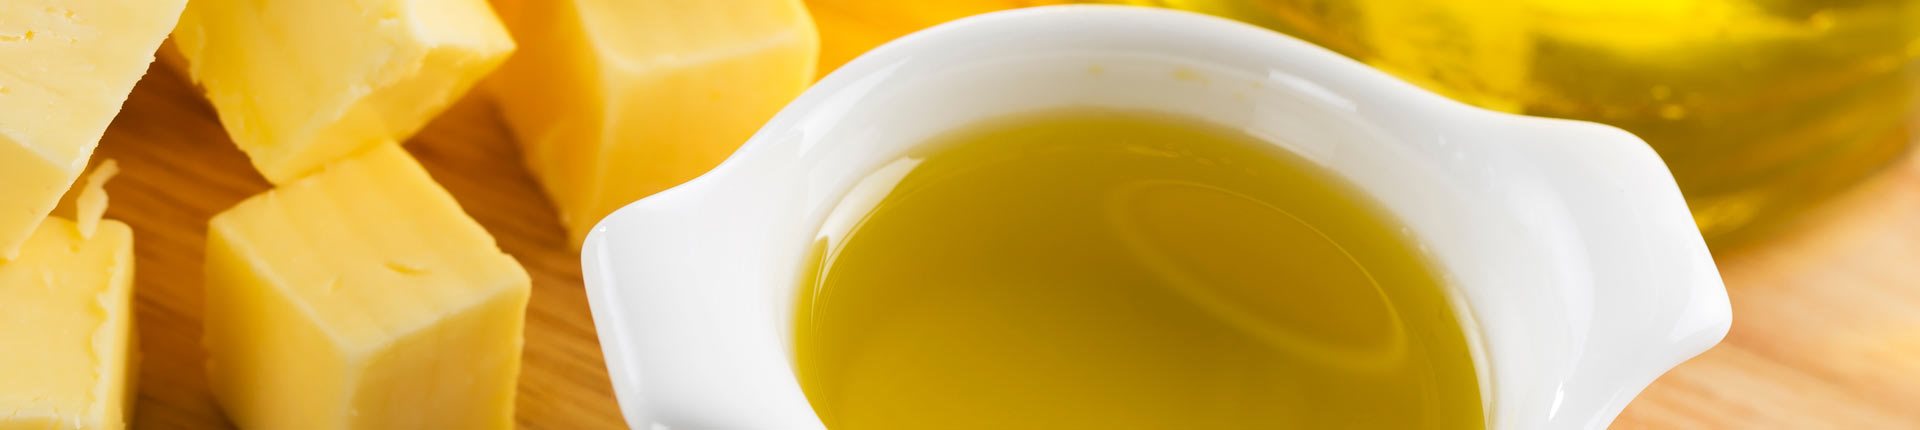 Masło czy oliwa z oliwek?